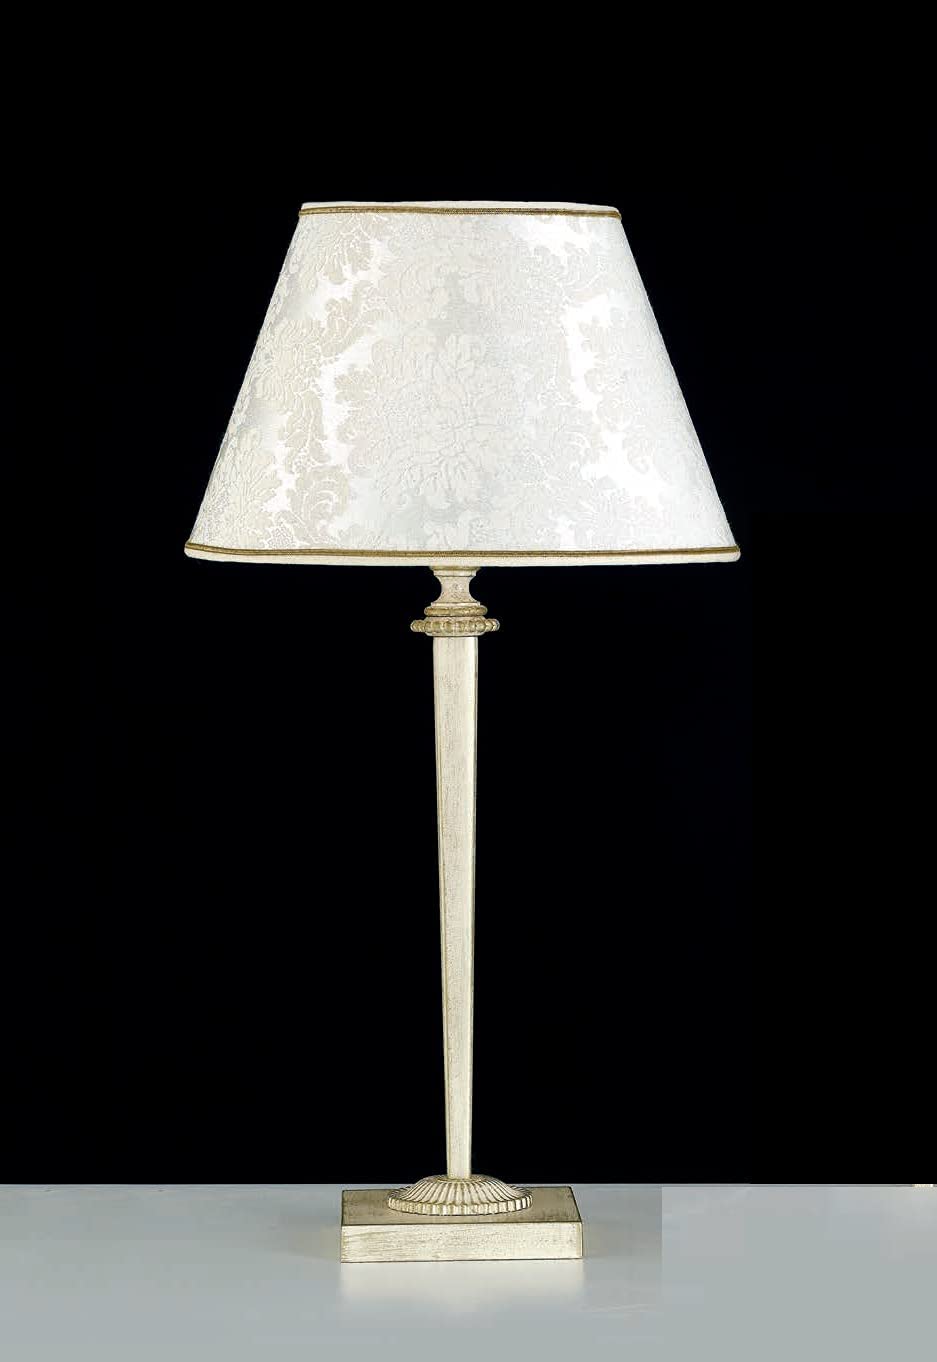 Lume grande classico a 1 luce in ottone avorio decapato oro con fregi decorativi in fusione di ottone e paralume damascato panna PR 6942/LG